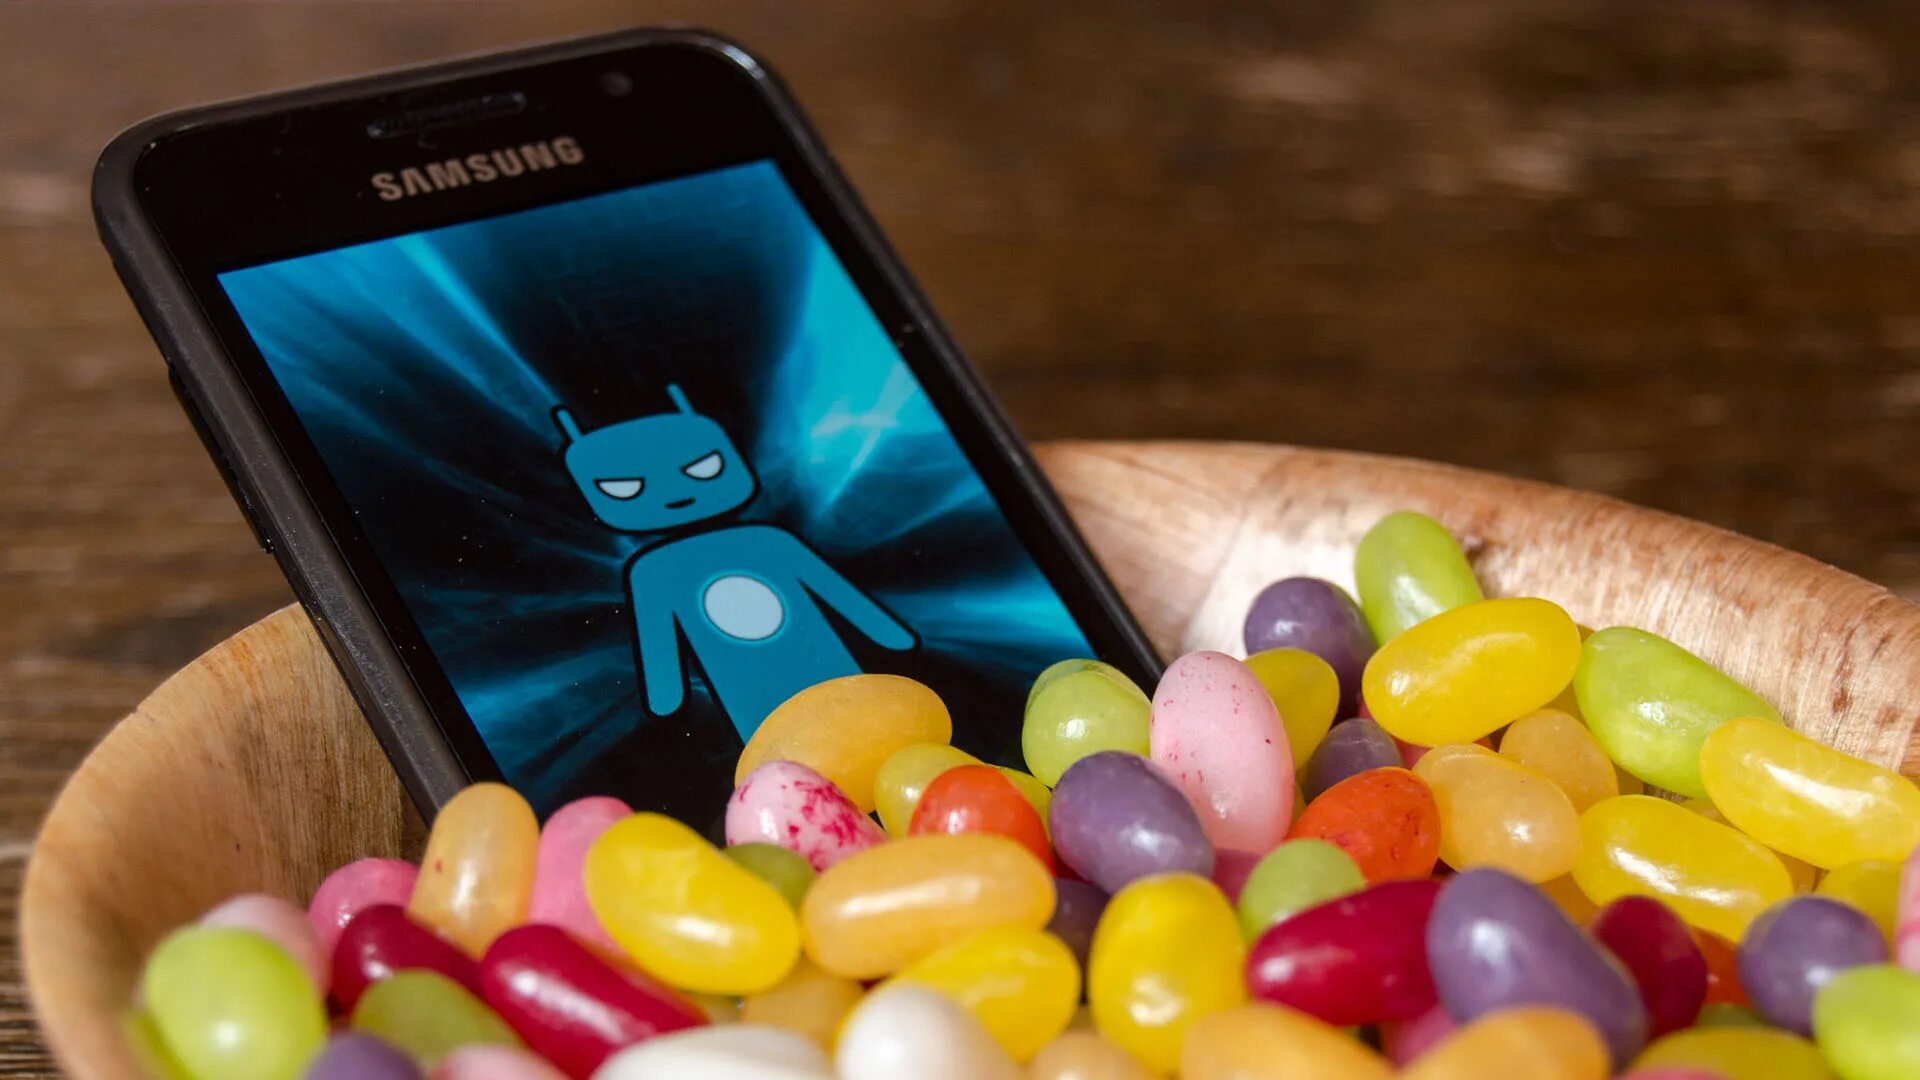 Jelly android. Android 4.1 Jelly Bean. Android Jelly Bean. Телефон на Android Jelly Bean. Android Jelly Bean телефон самсунг.